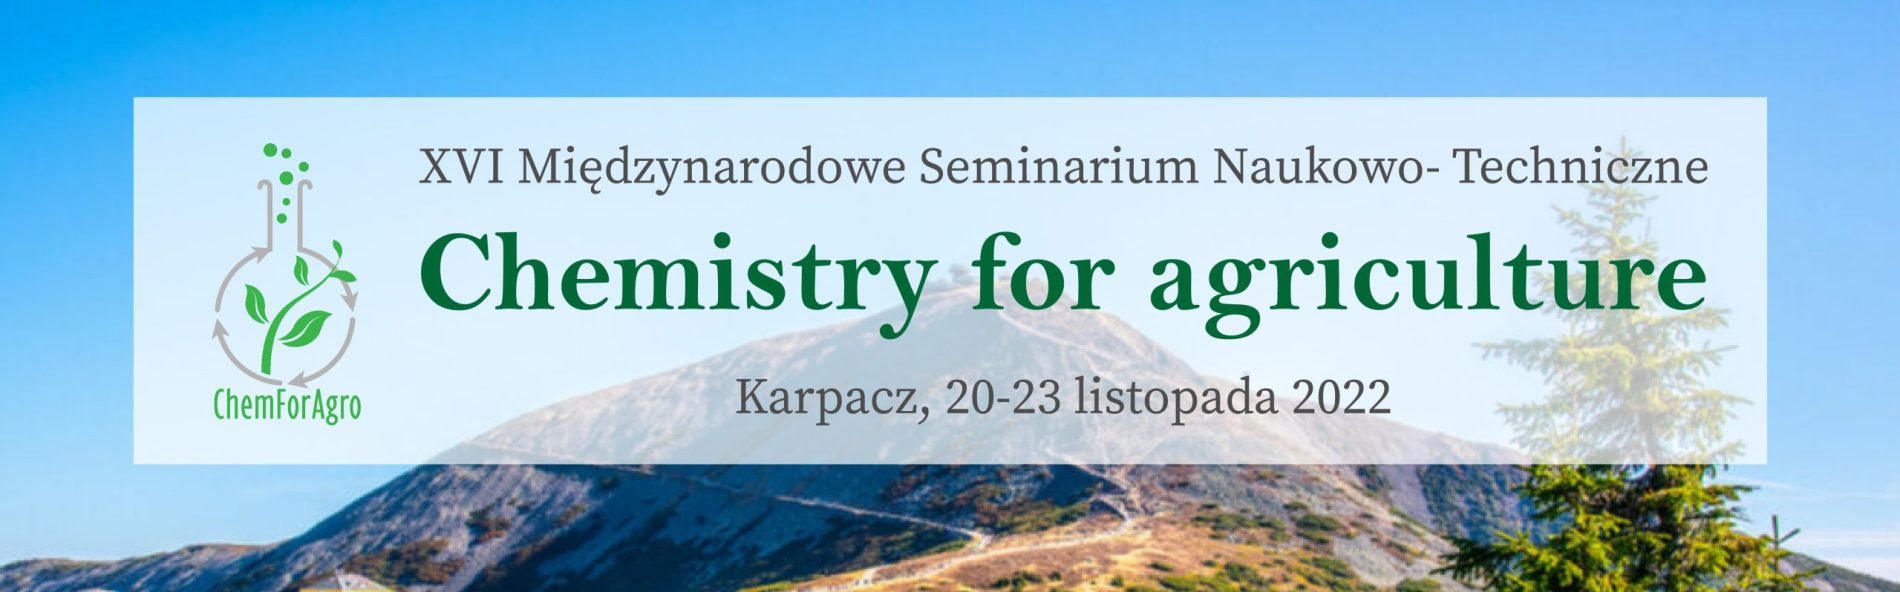 XVI Międzynarodowe Seminarium Naukowo- Techniczne "Chemistry for agriculture"